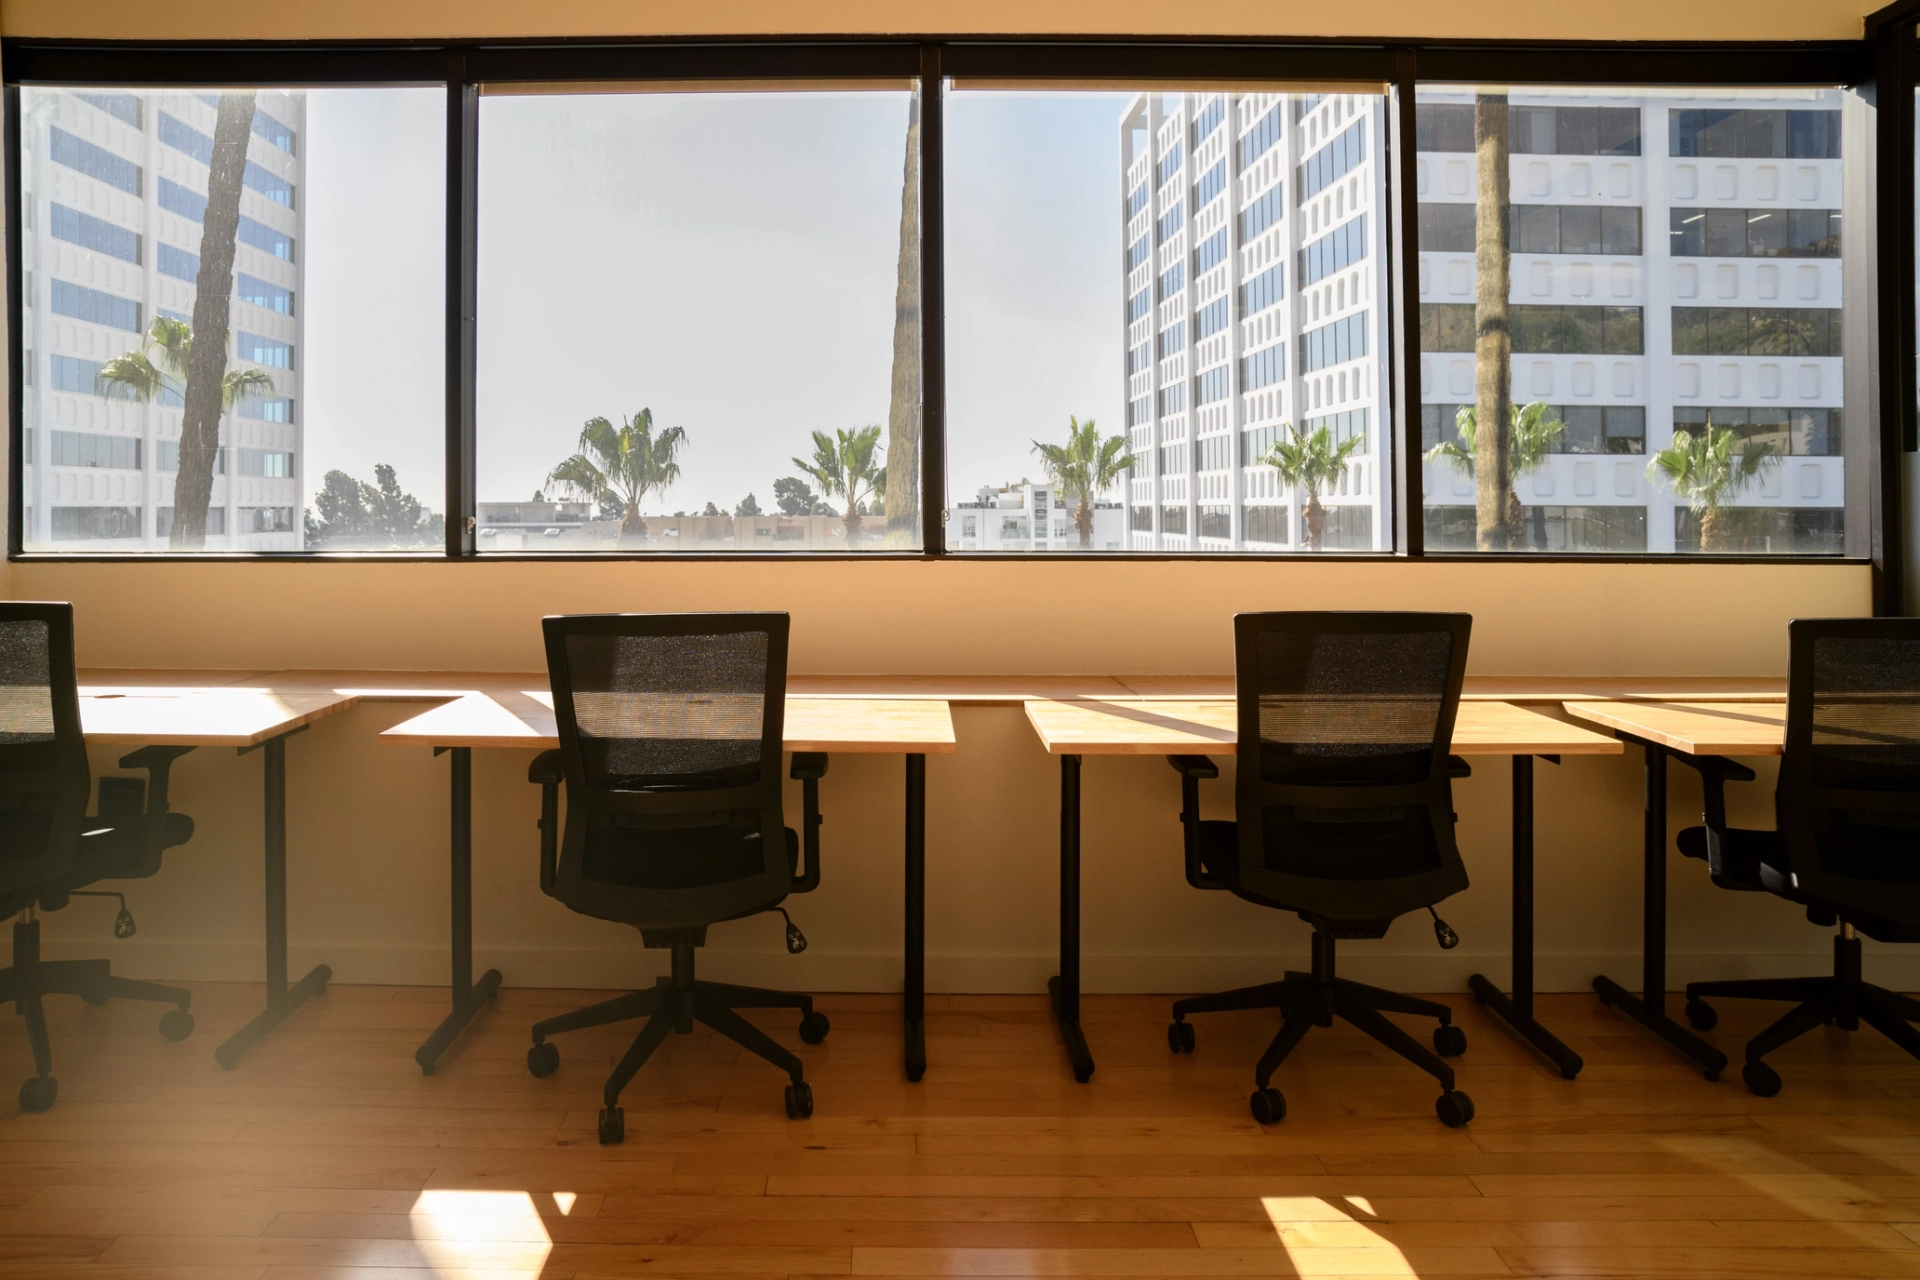 Een rij lege bureaustoelen in een coworking-werkruimte met uitzicht op grote ramen met uitzicht op palmbomen en stedelijke gebouwen in Los Angeles.